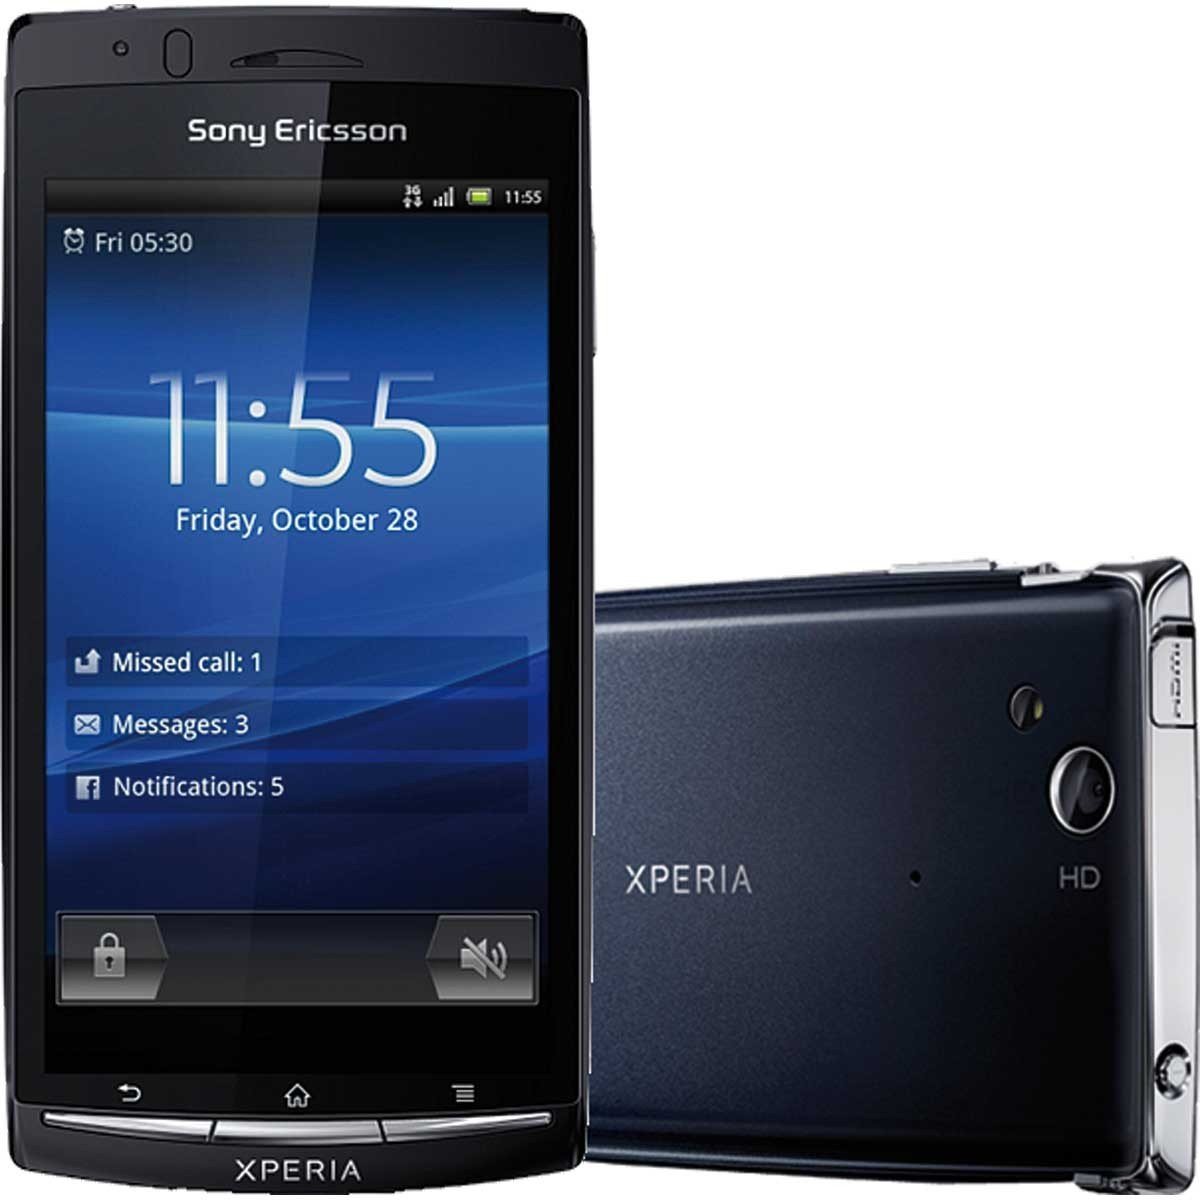 Xperia ARC: nuevo smartphone de Sony Ericsson (Comunicado de Prensa) #CES